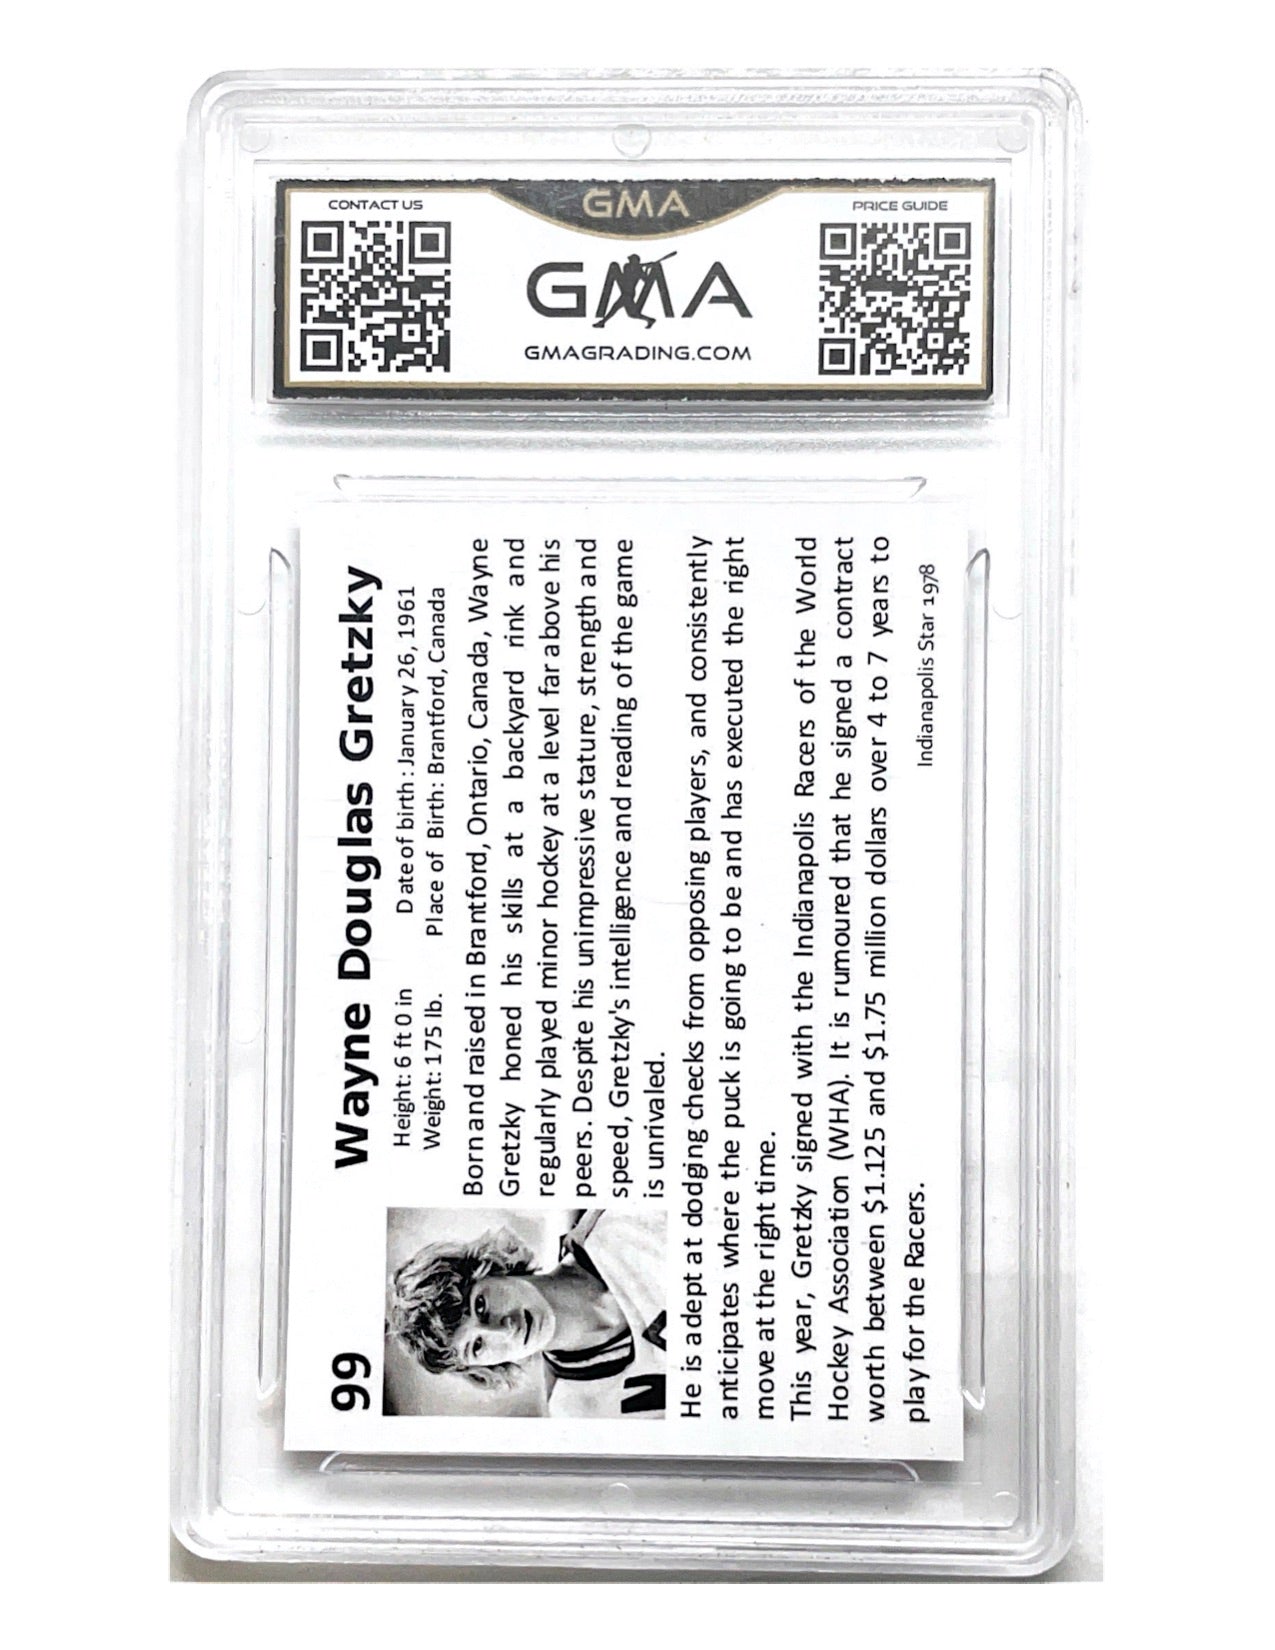 Wayne Gretzky 1978 Indianapolis Racers Rookie Card Reprint #99- GMA 10